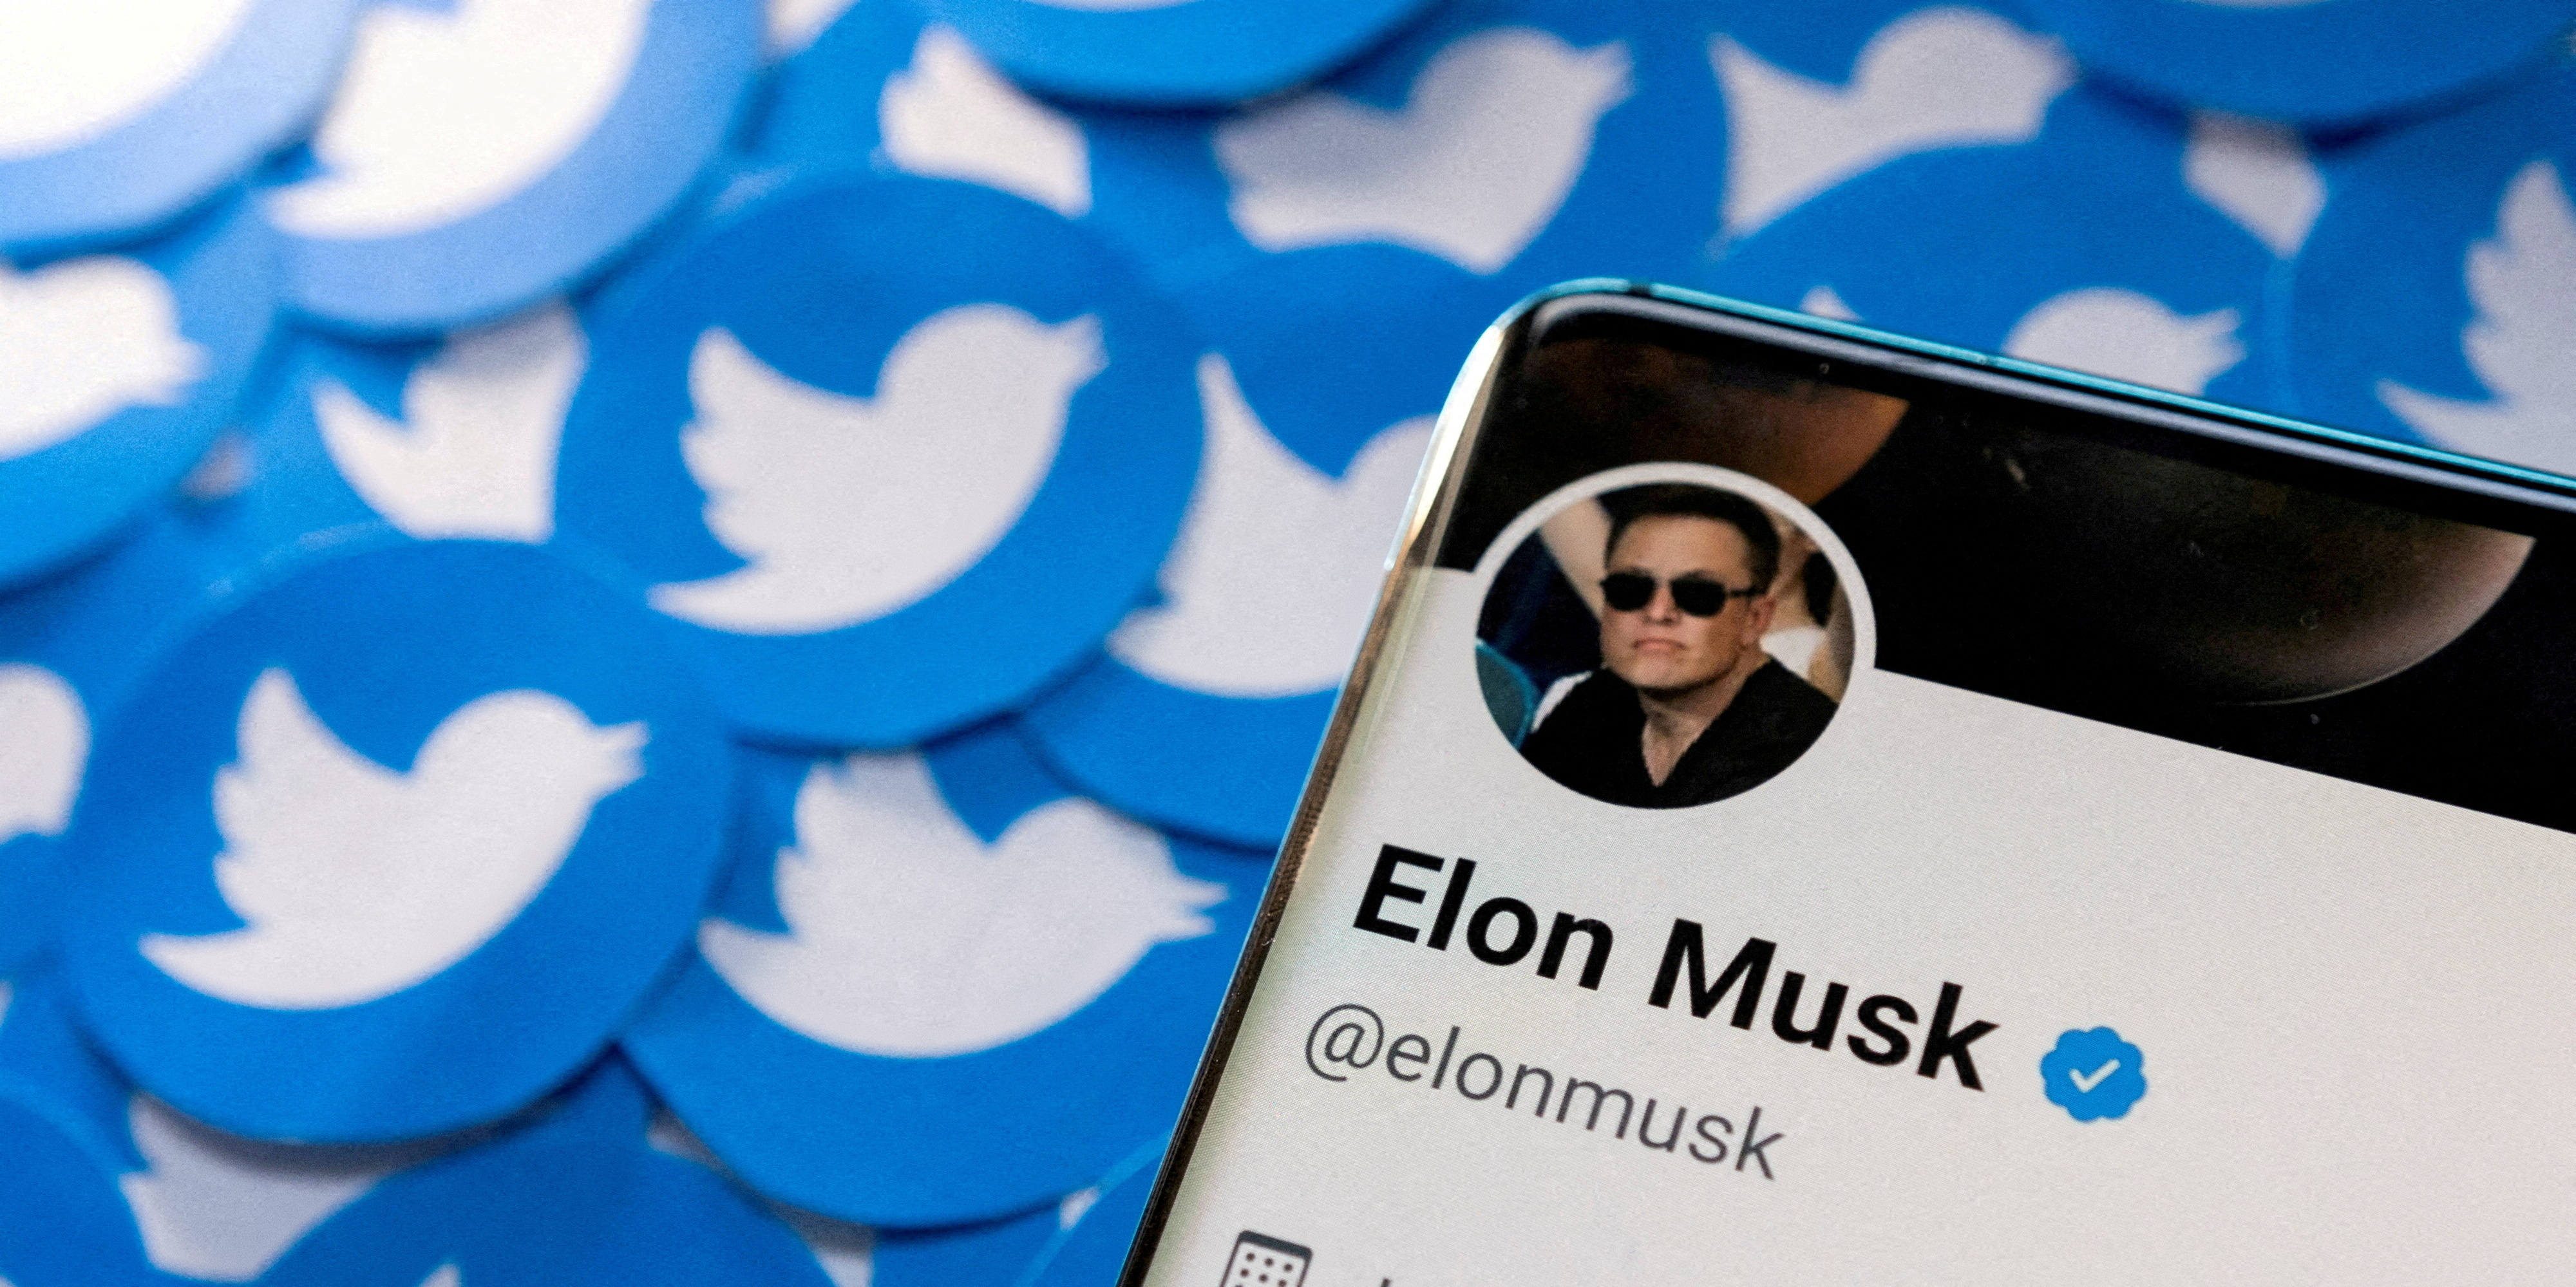 Twitter : le compte du rappeur Kanye West se heurte aux règles de modération d'Elon Musk